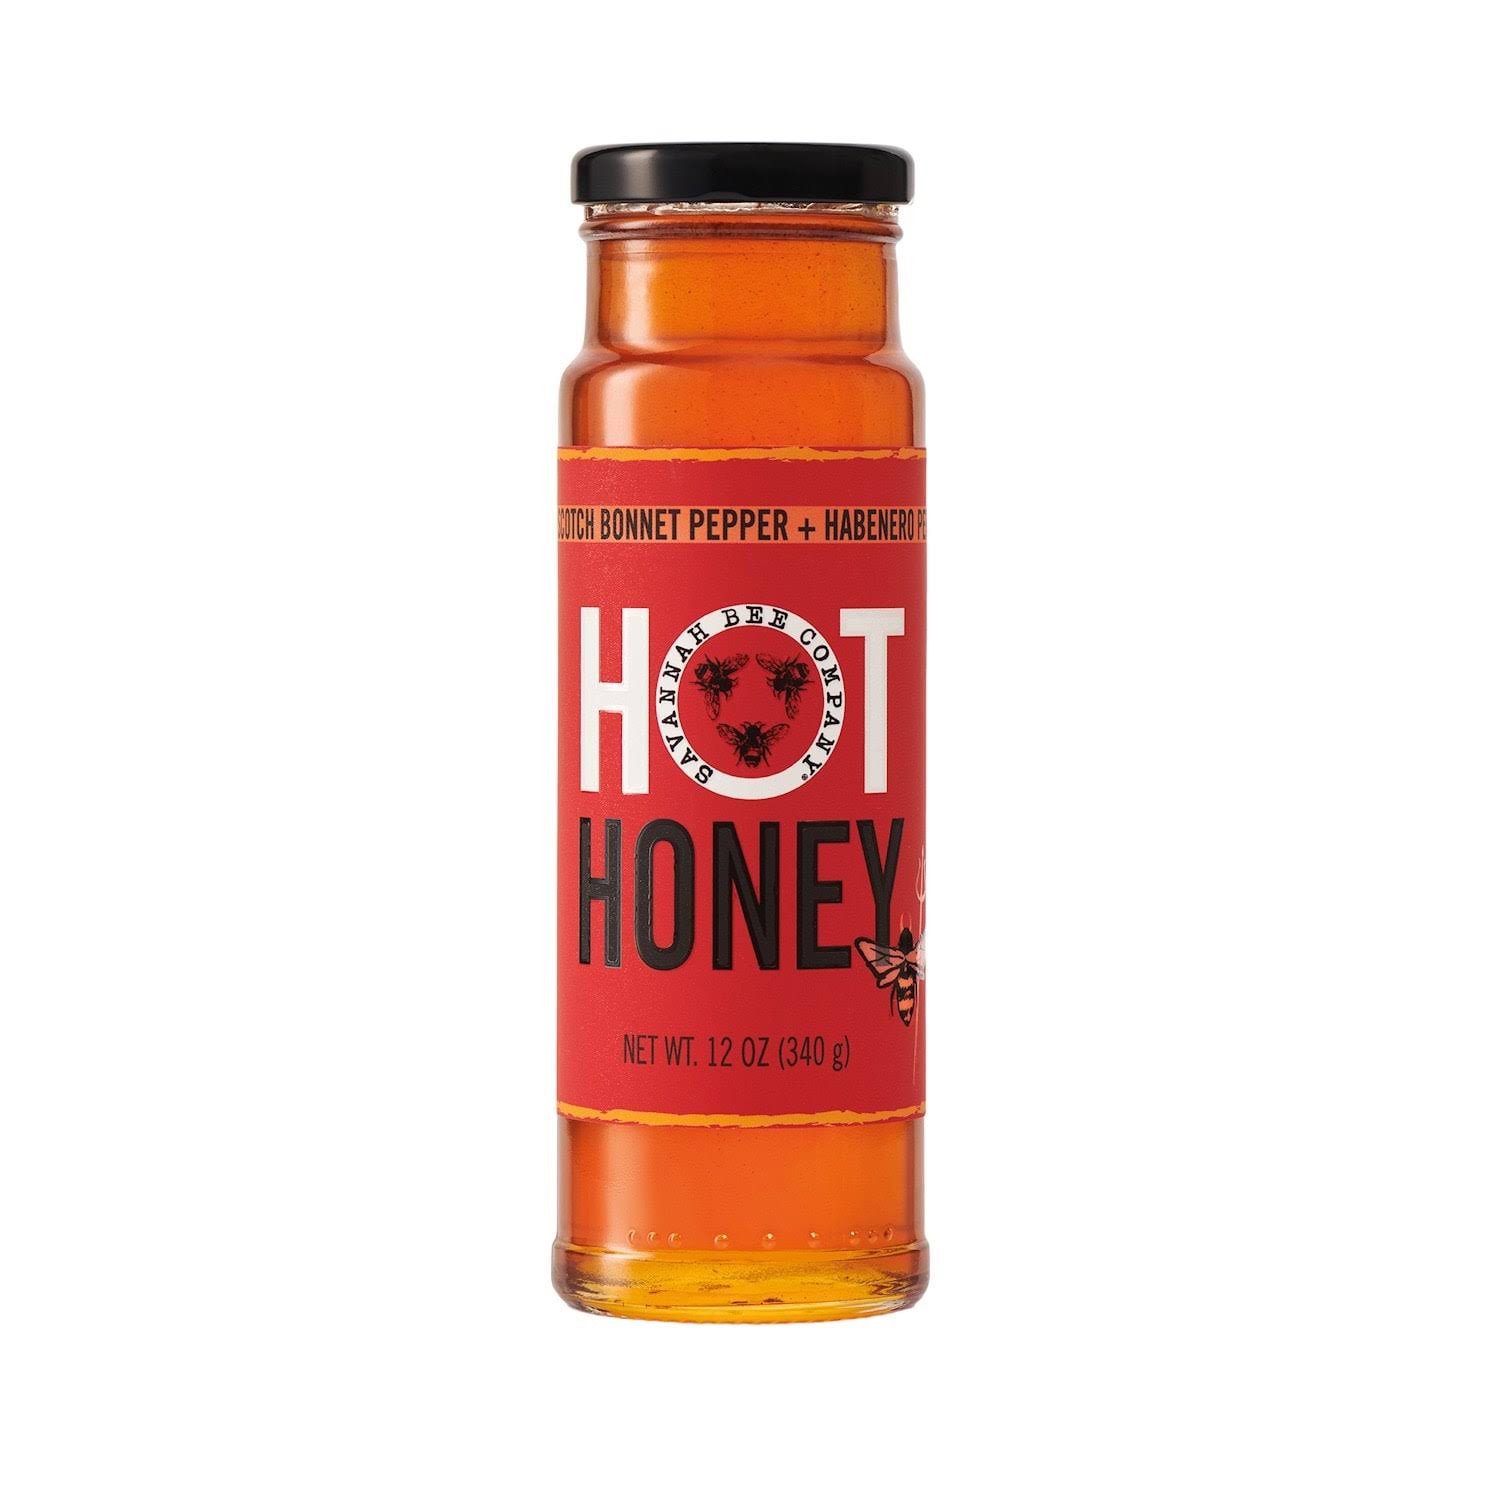 Savannah Bee Company - Hot Honey